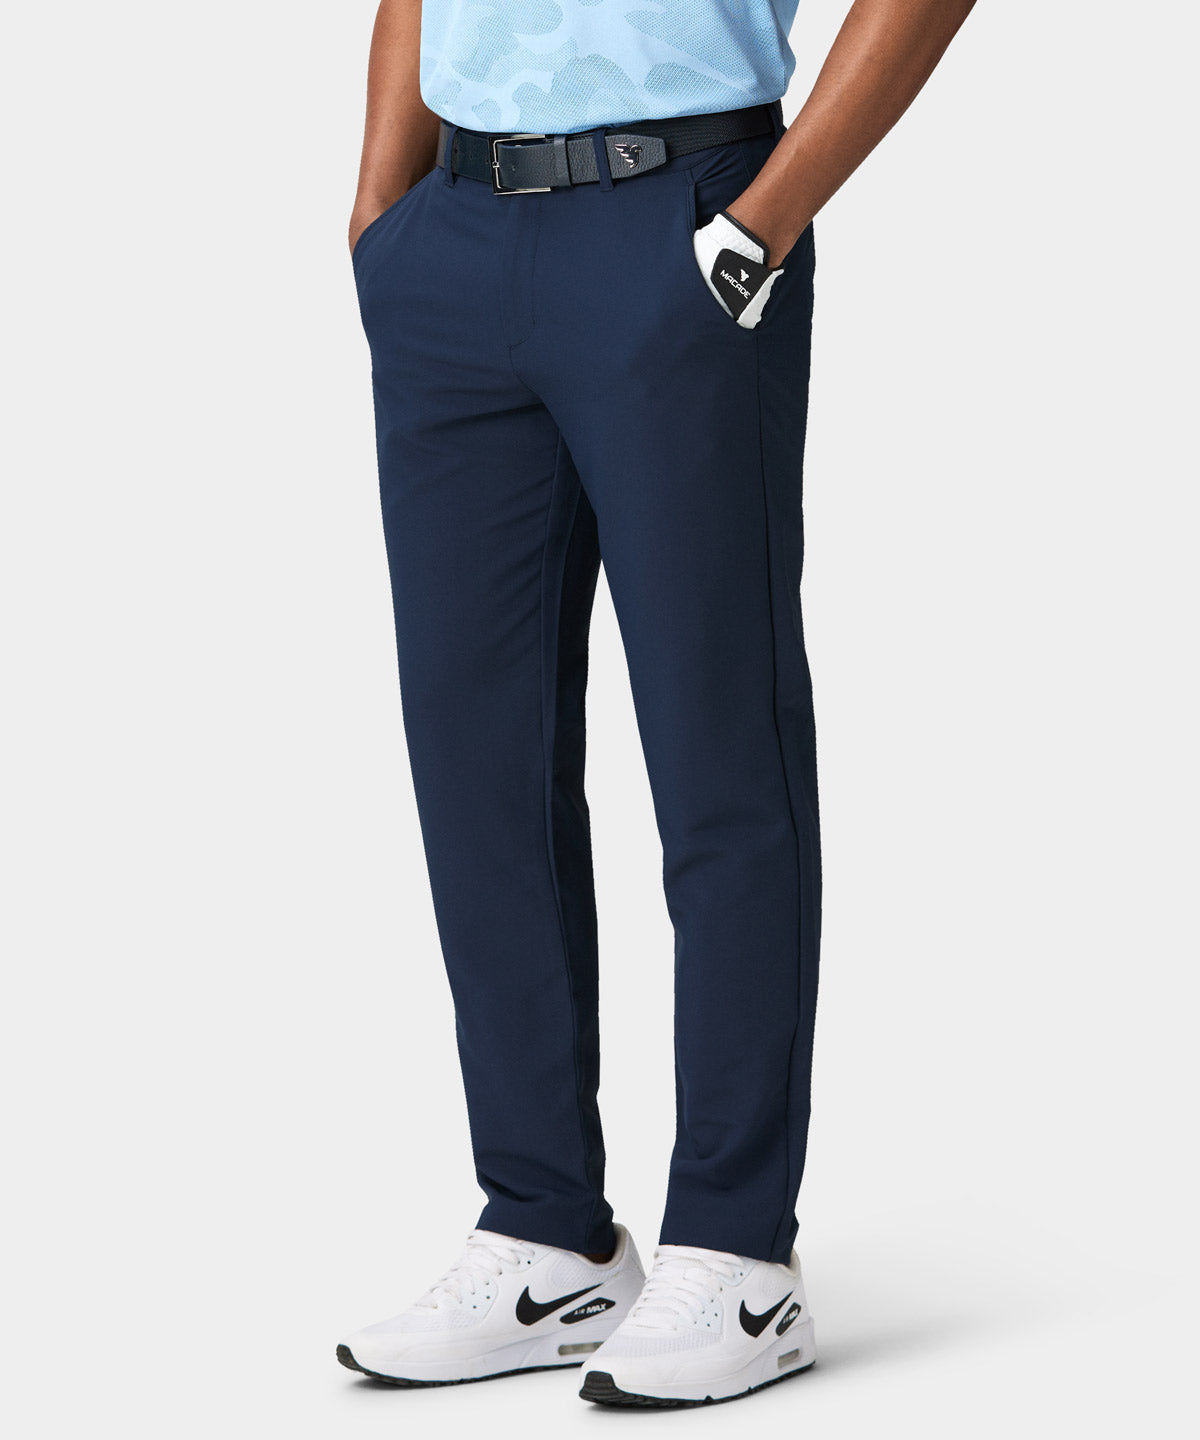 Lou Slate Blue Regular Trouser